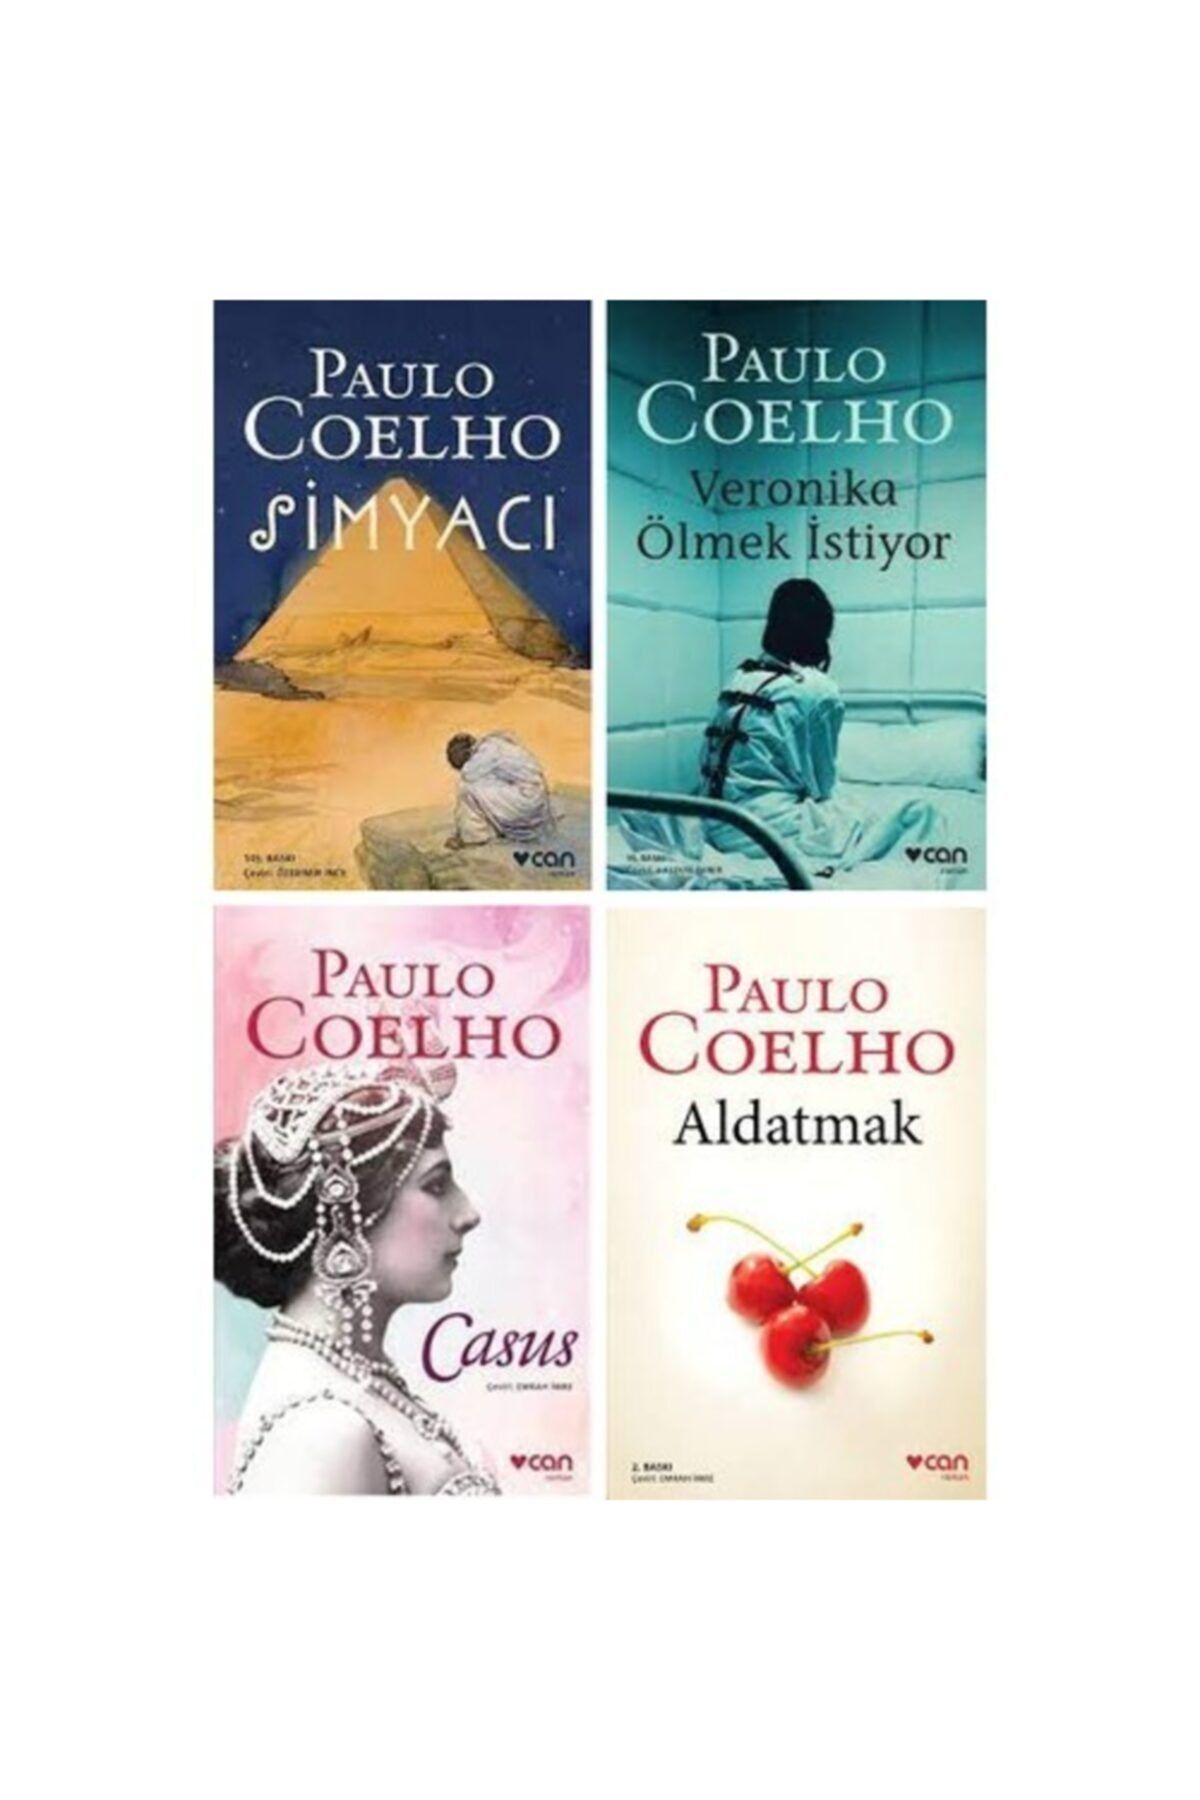 Can Yayınları Paulo Coelho 4 Kitap Set 1 / Simyacı - Veronika Ölmek Istiyor - Casus - Aldatmak